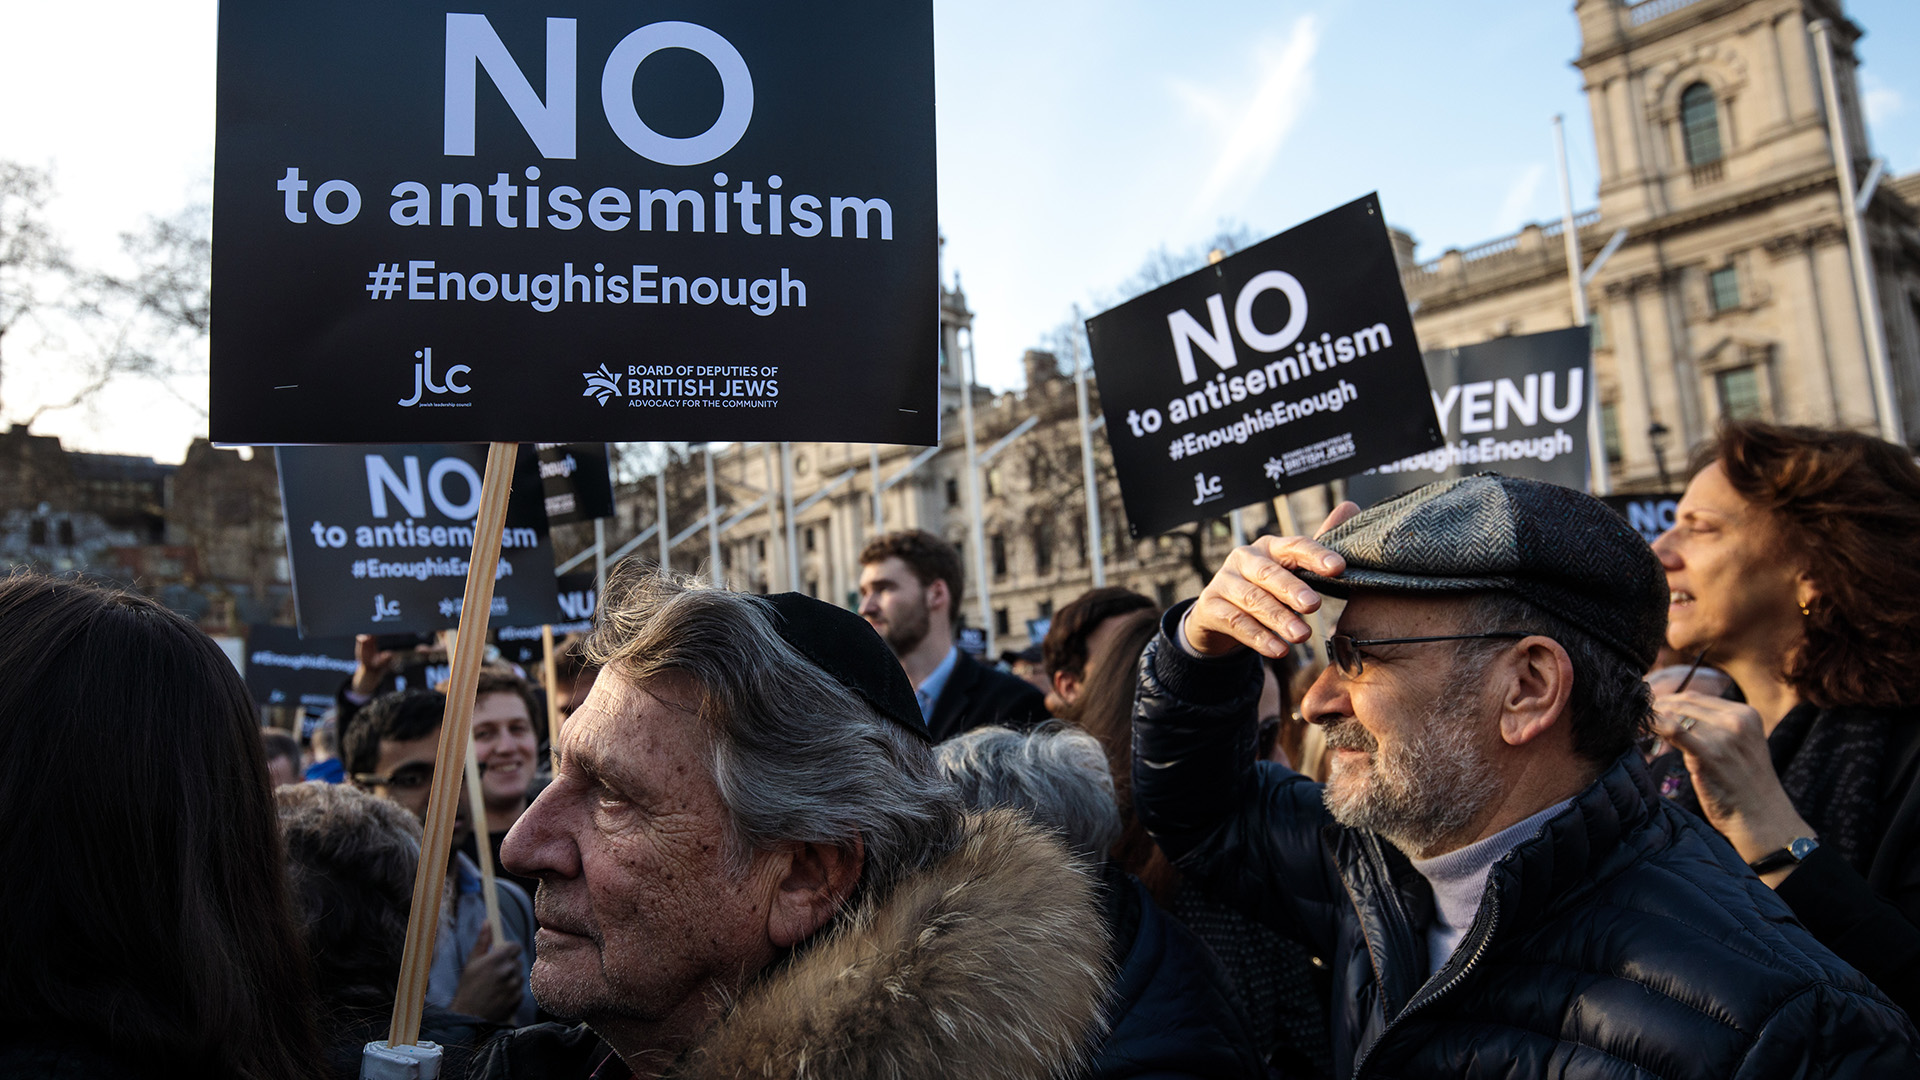 Grupos antisemitas buscan plataformas alternativas para promover el odio